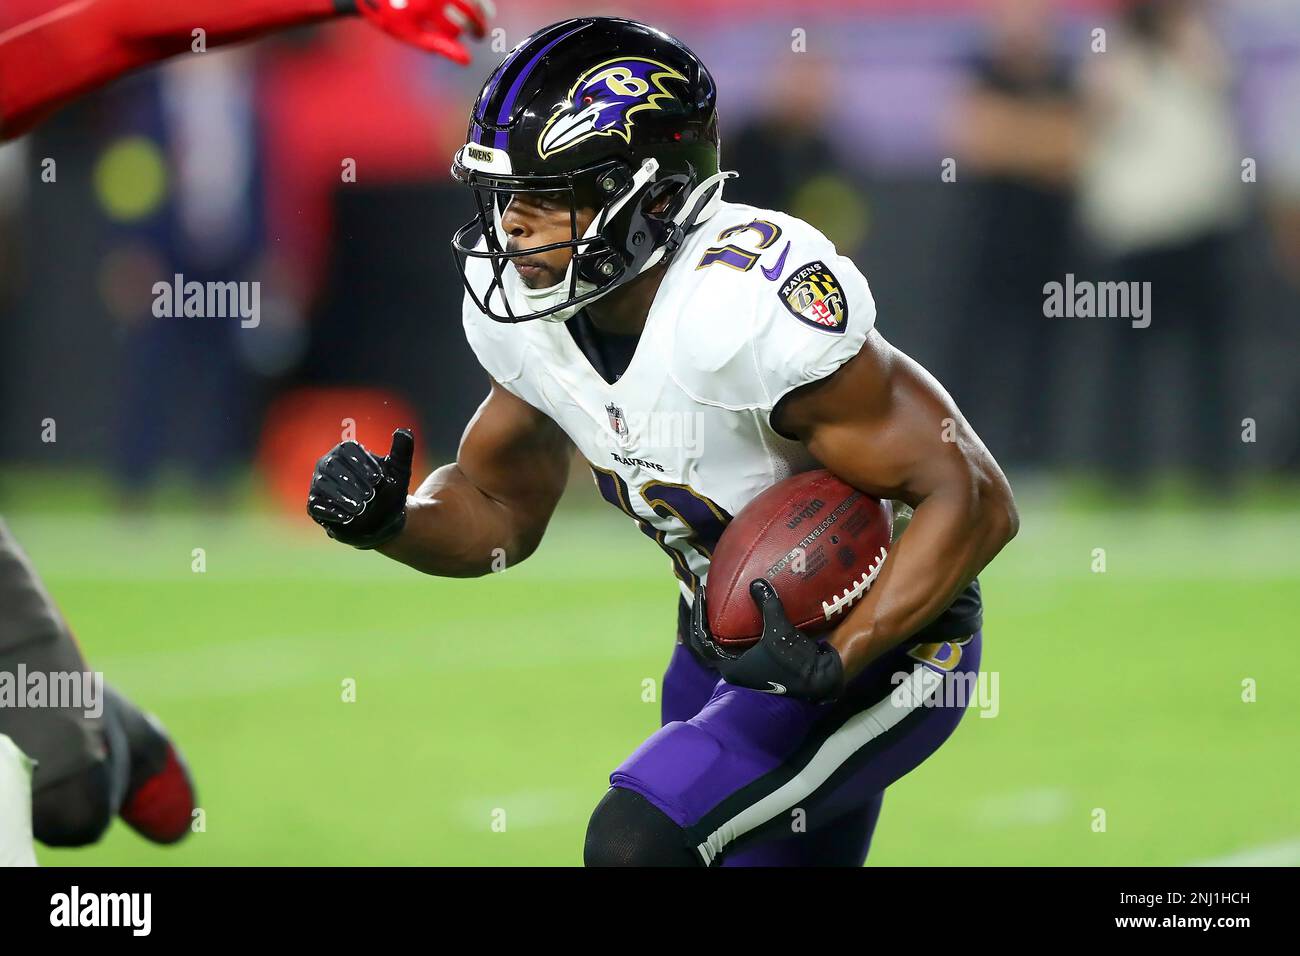 TAMPA, FL - OCTOBER 27: Baltimore Ravens wide receiver Devin